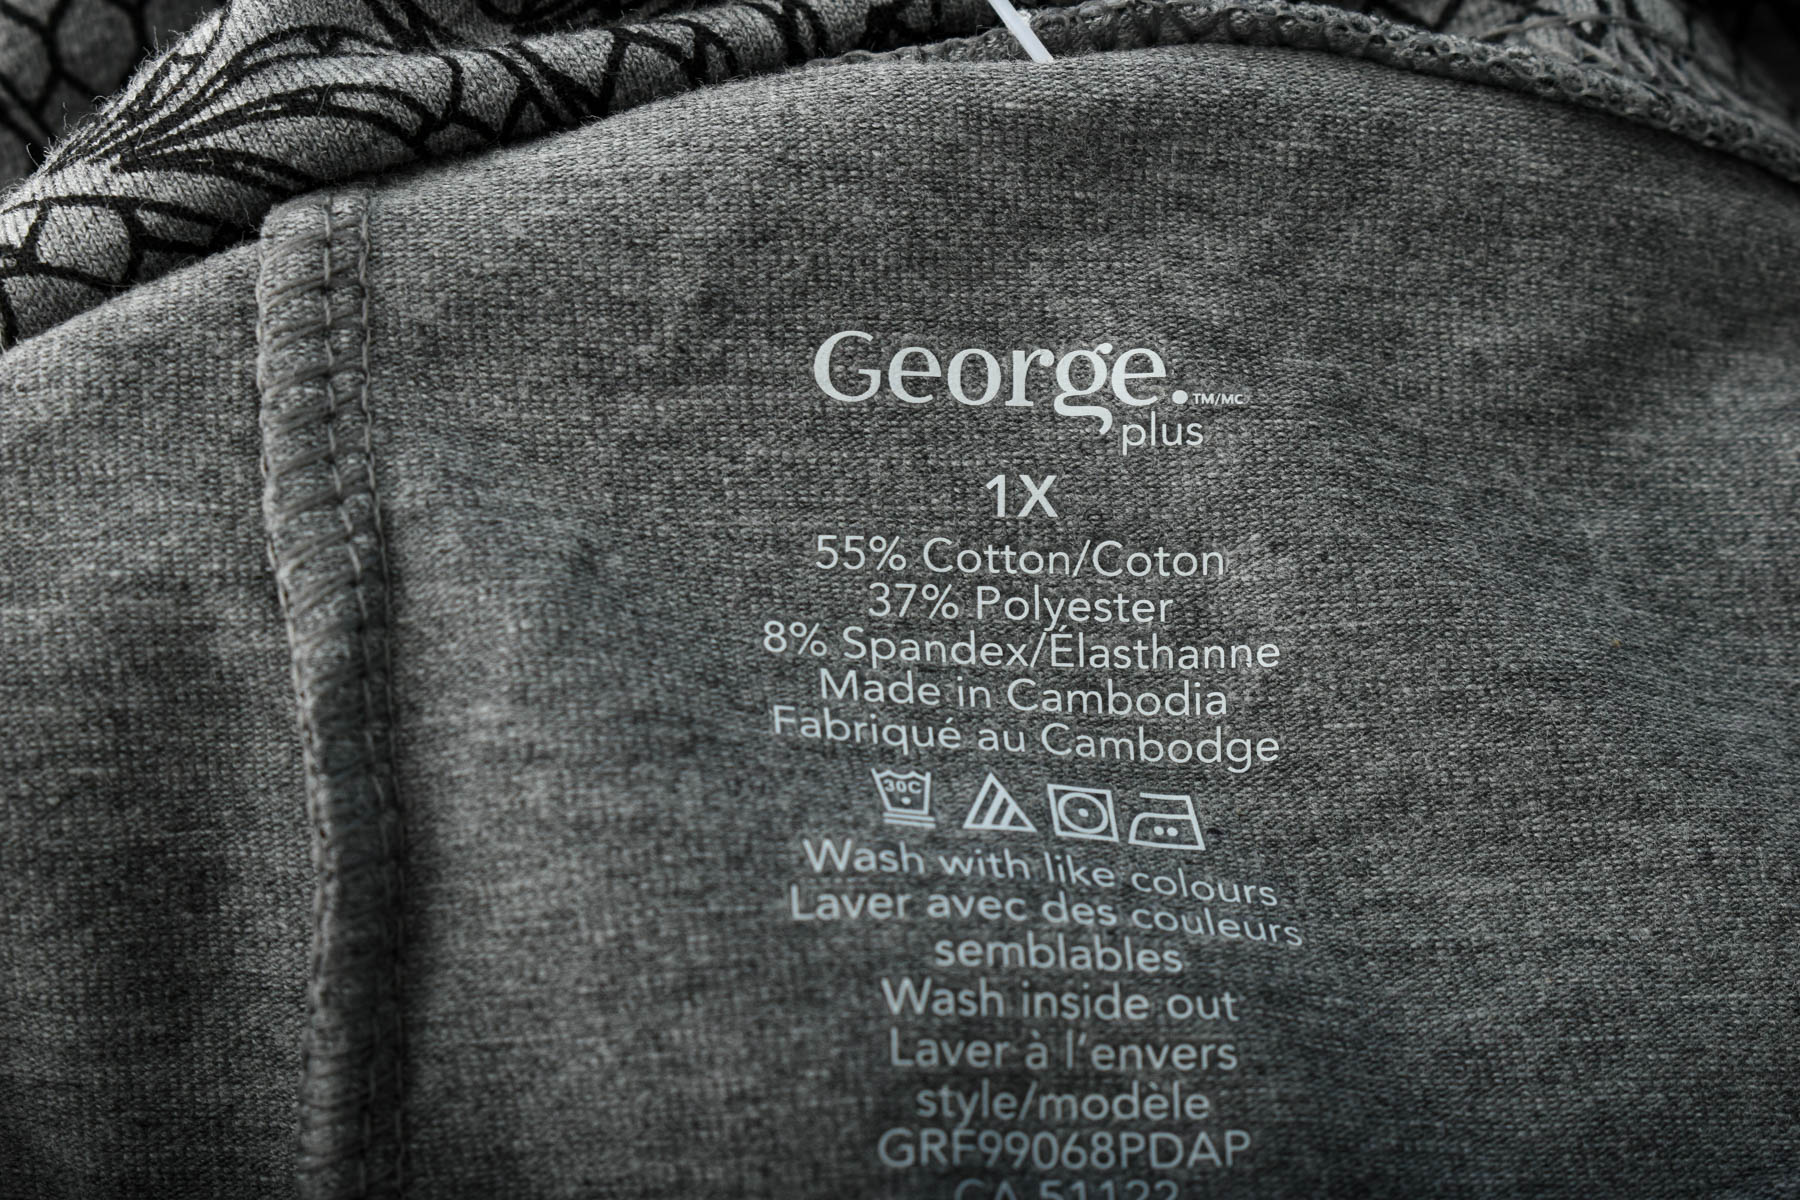 Leggings - George. - 2